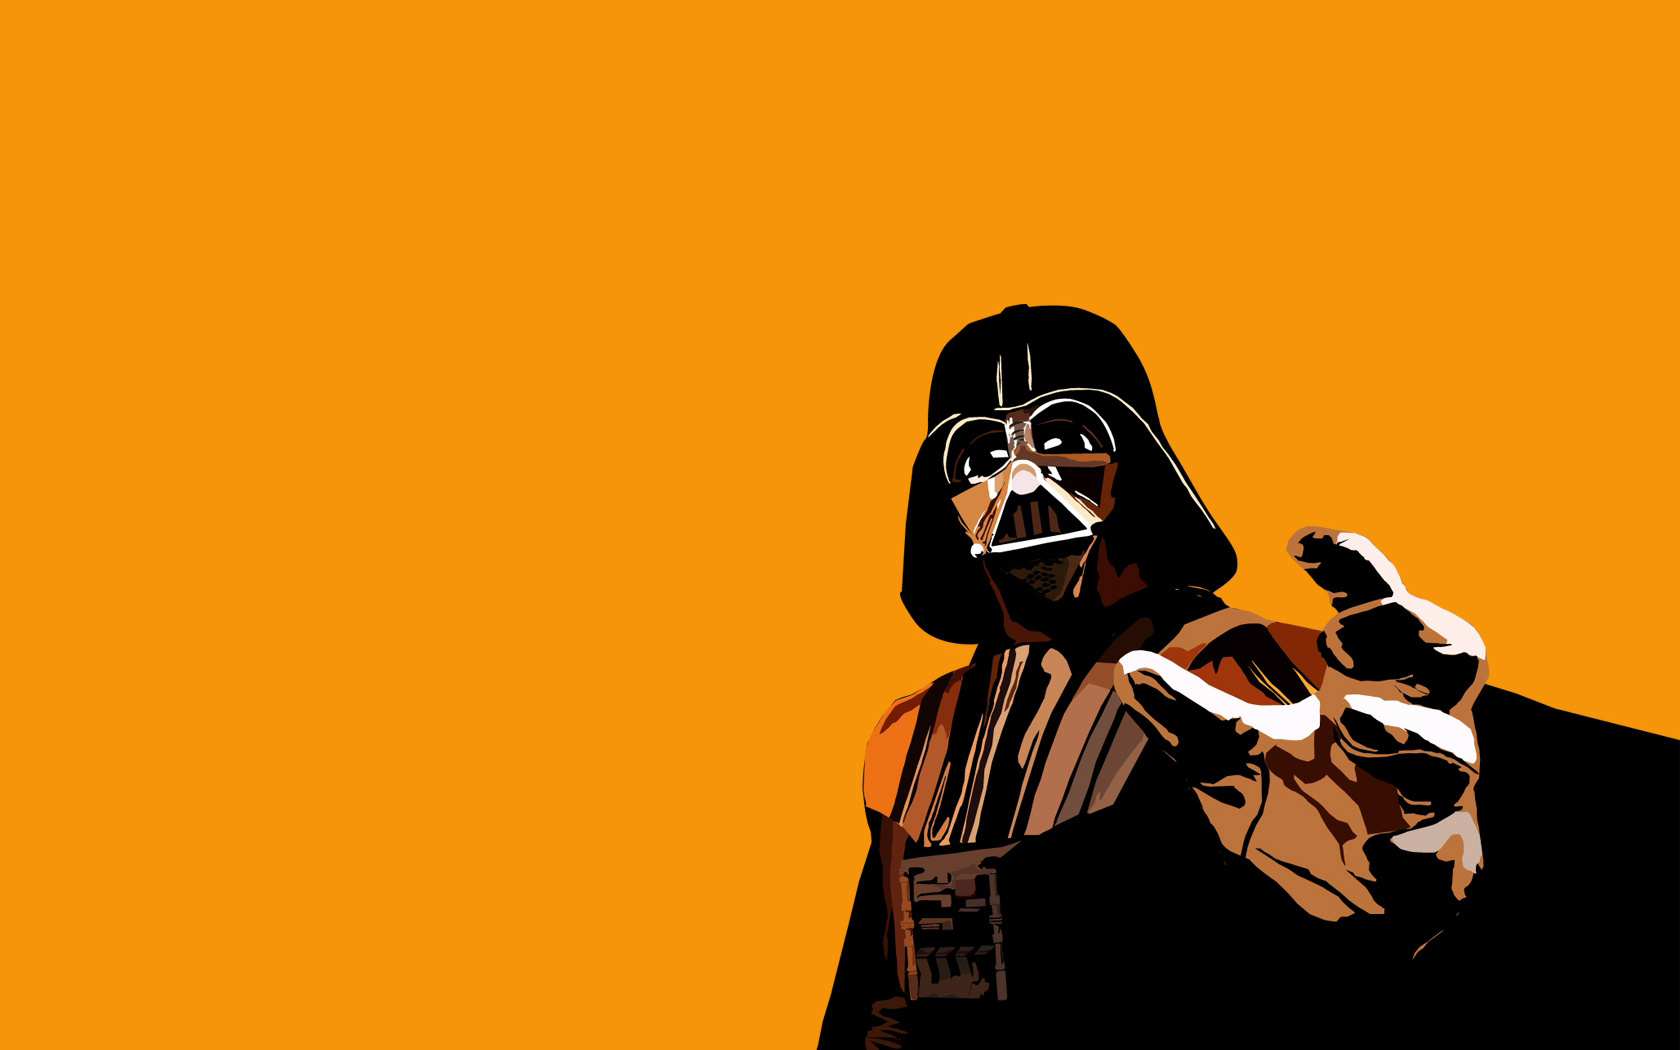 Wallpaper. Minimalism. photo. picture. Darth Vader, star wars, orange background